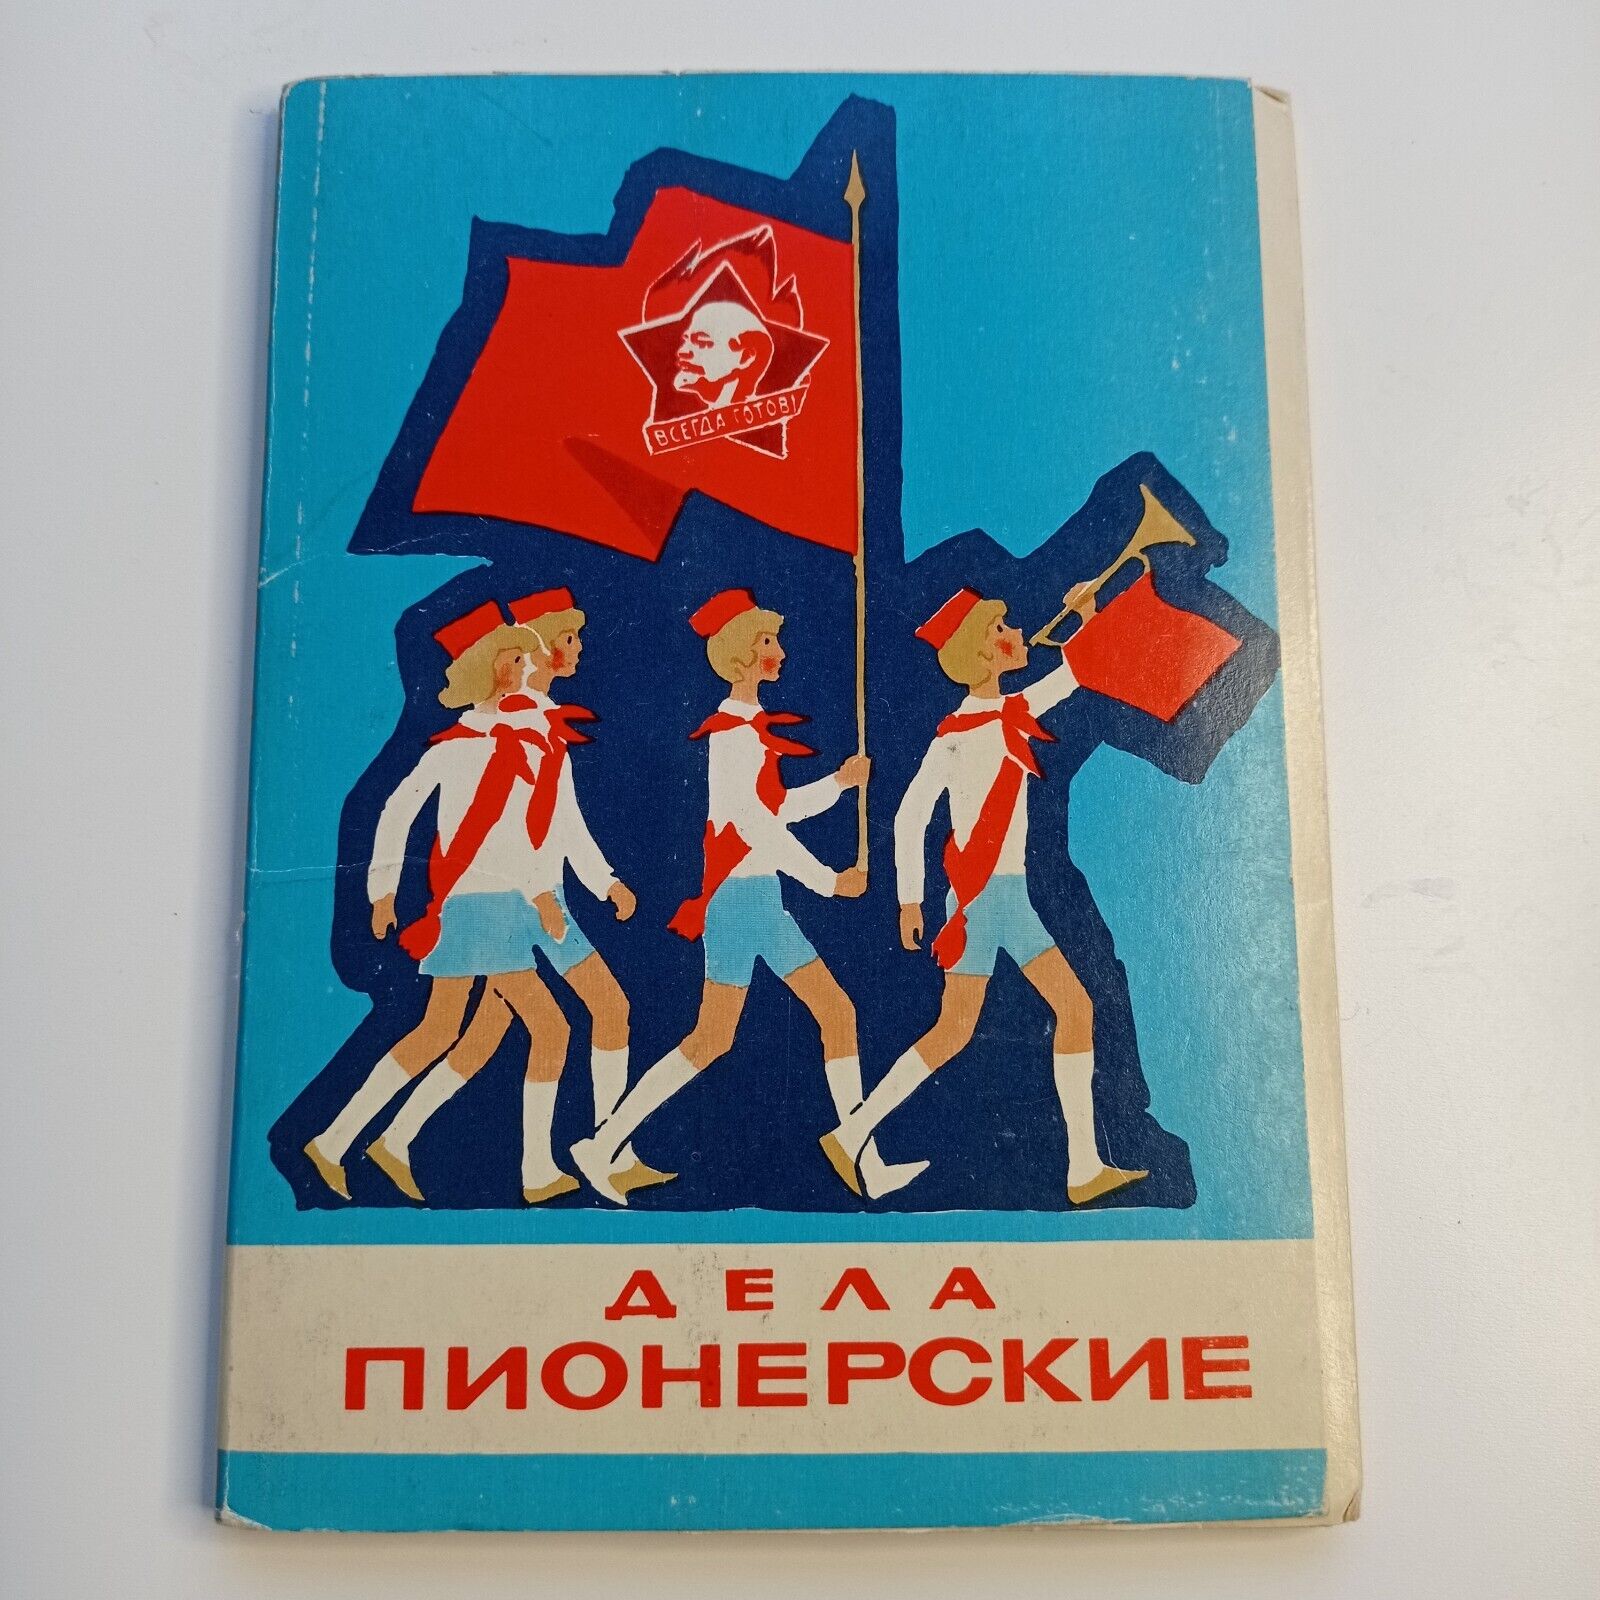 Vintage 1976 USSR Postcards Pioneer affairs  Soviet Union Propaganda Socialist